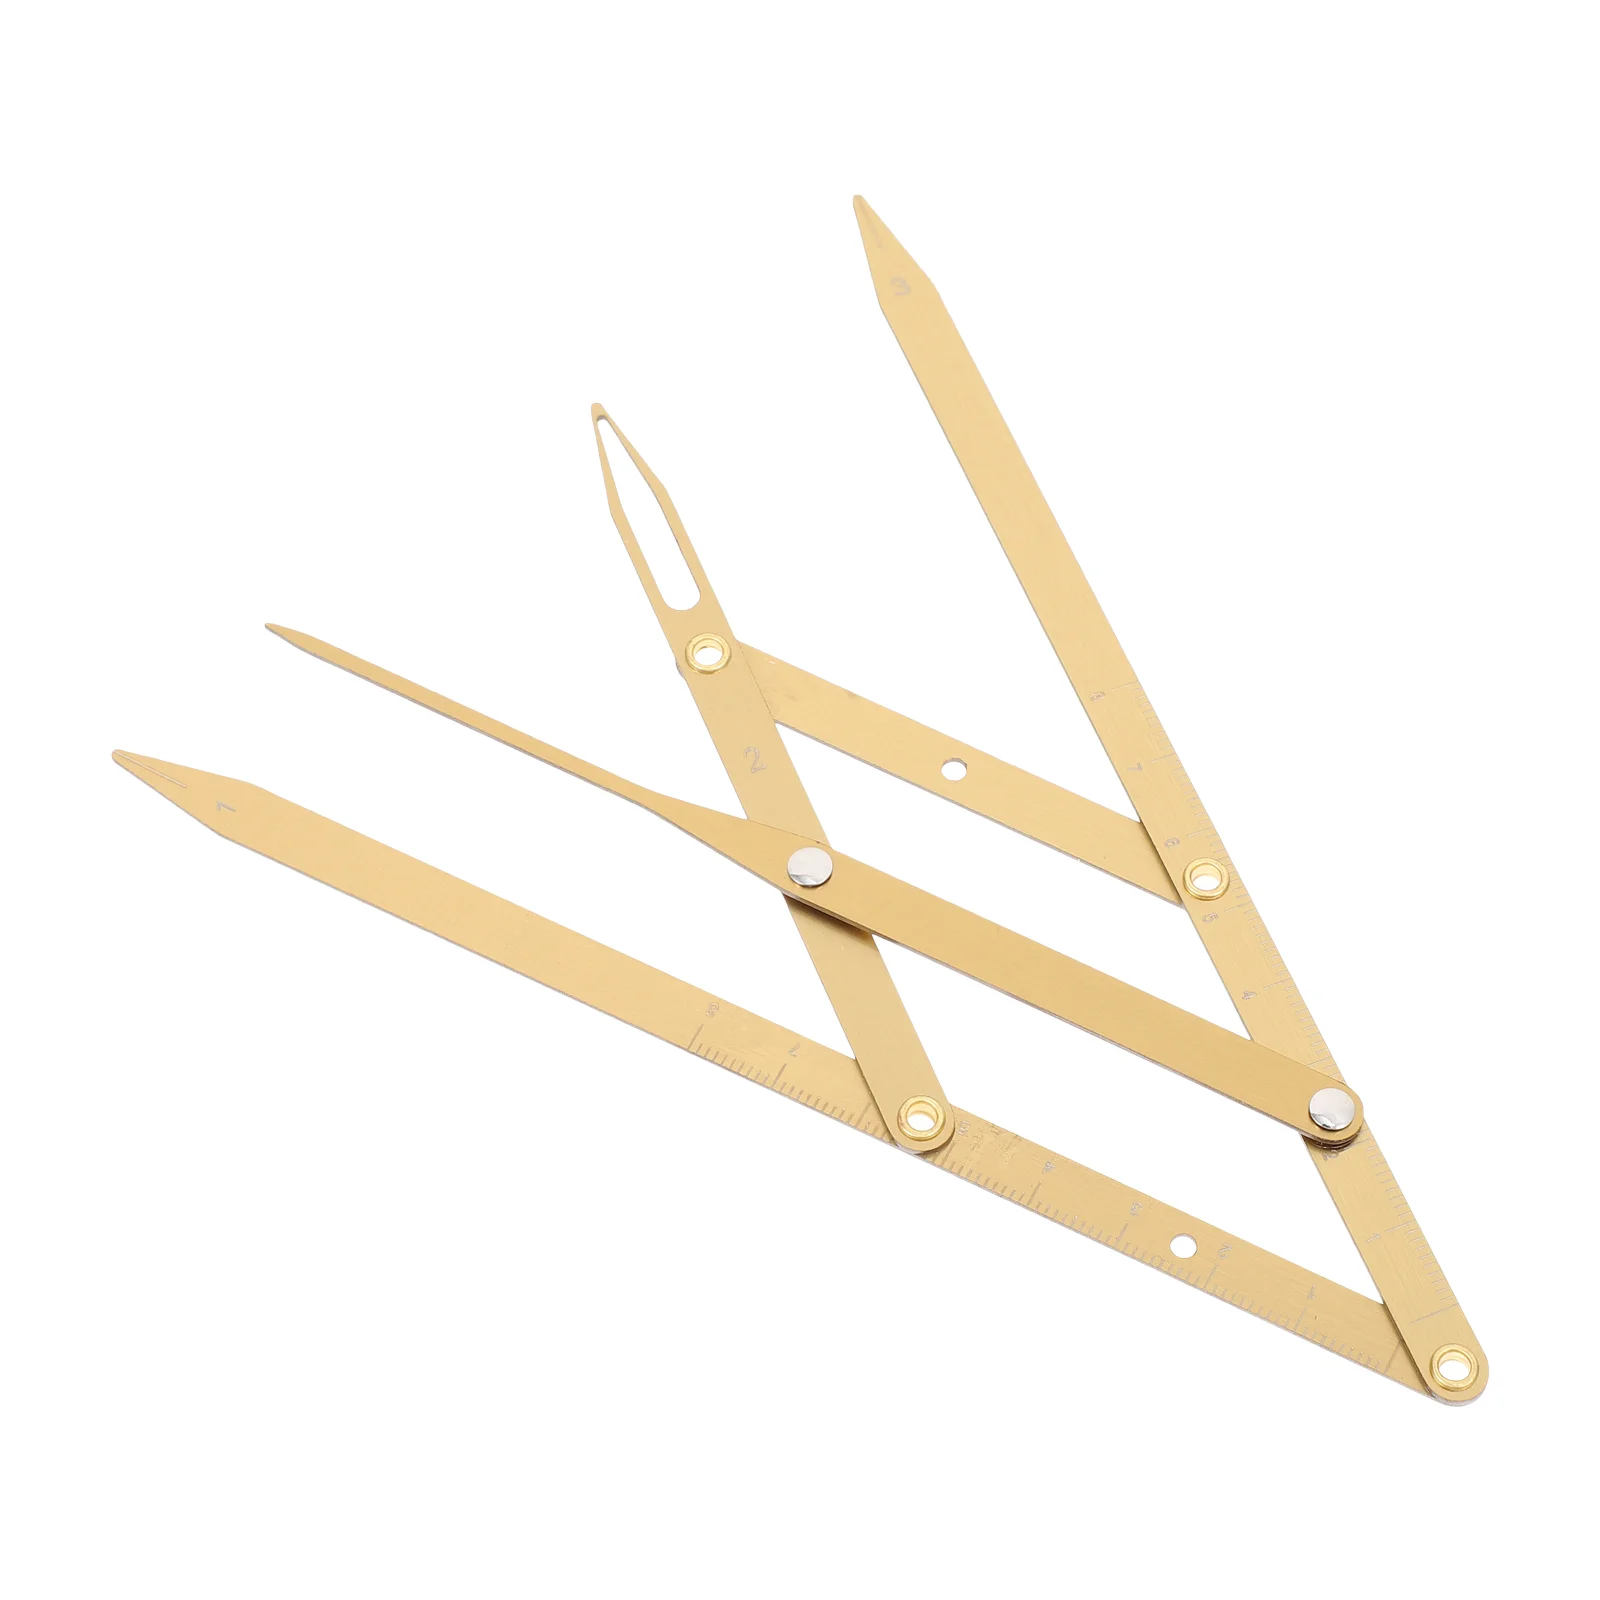 

Stencil Ruler Golden Ratio Caliper Stainless Steel Ruler Flexible Removable for Makeup Measure Shaper Ruler Golden